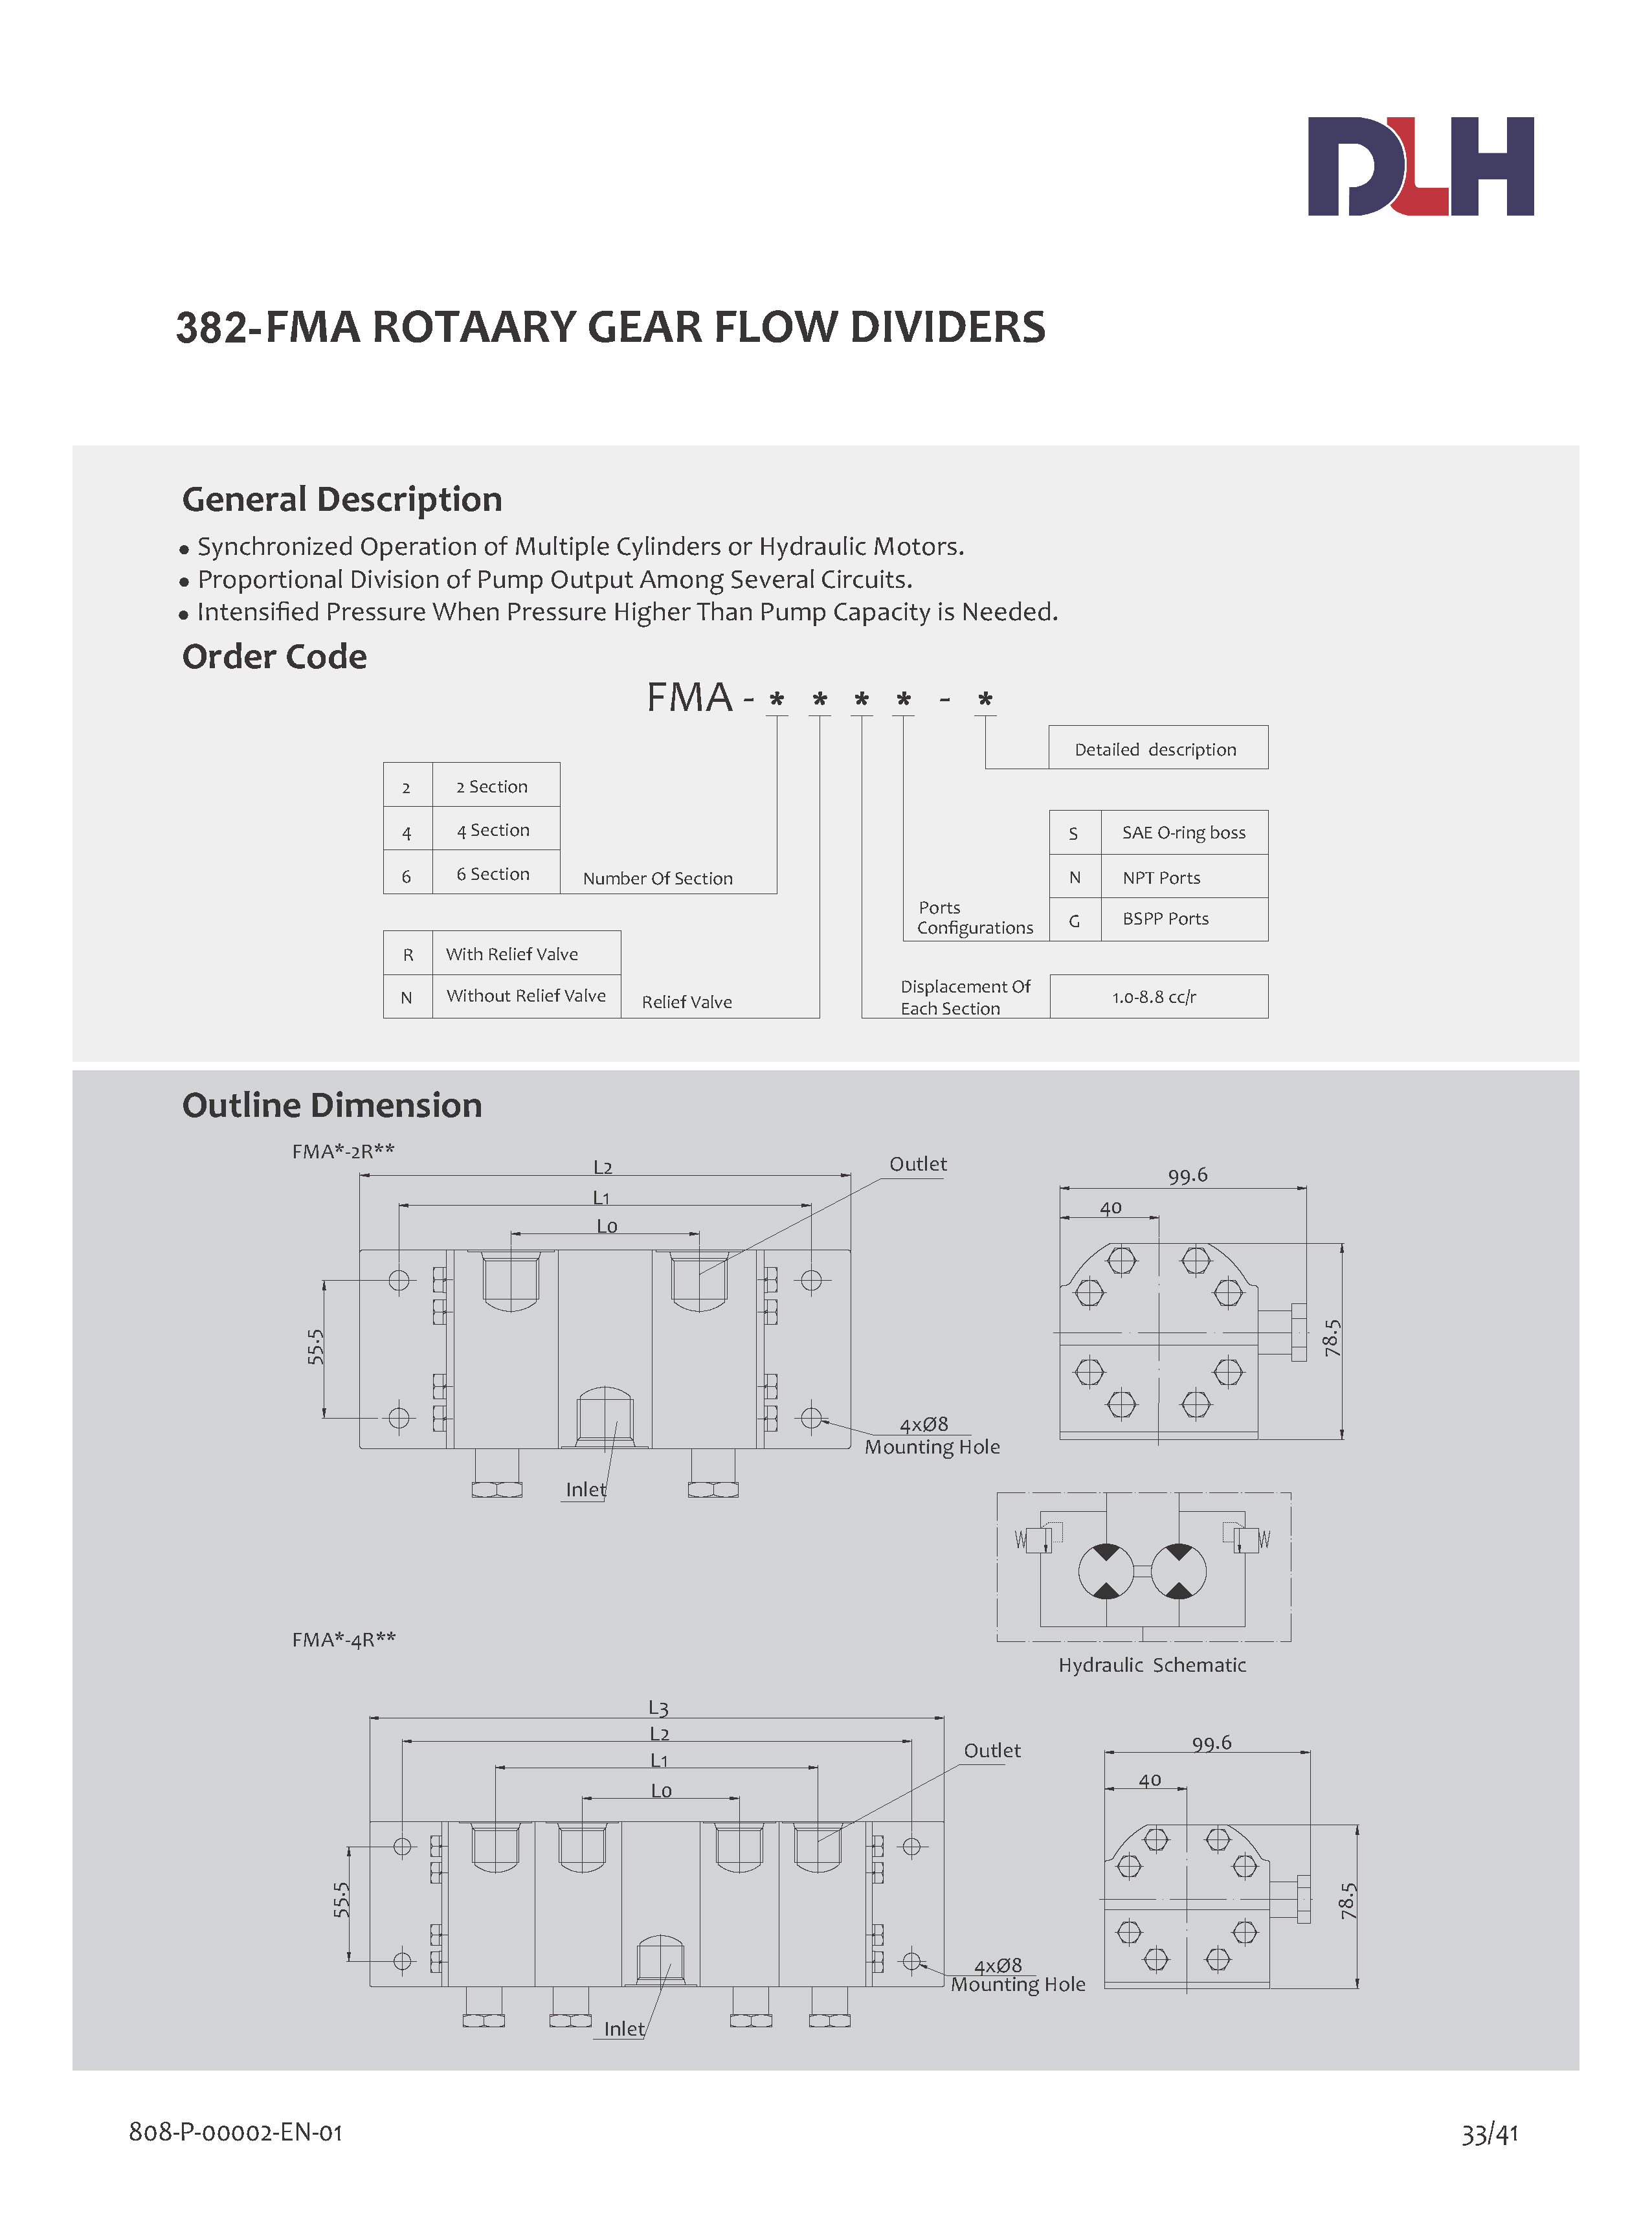 FMA Flow Divider